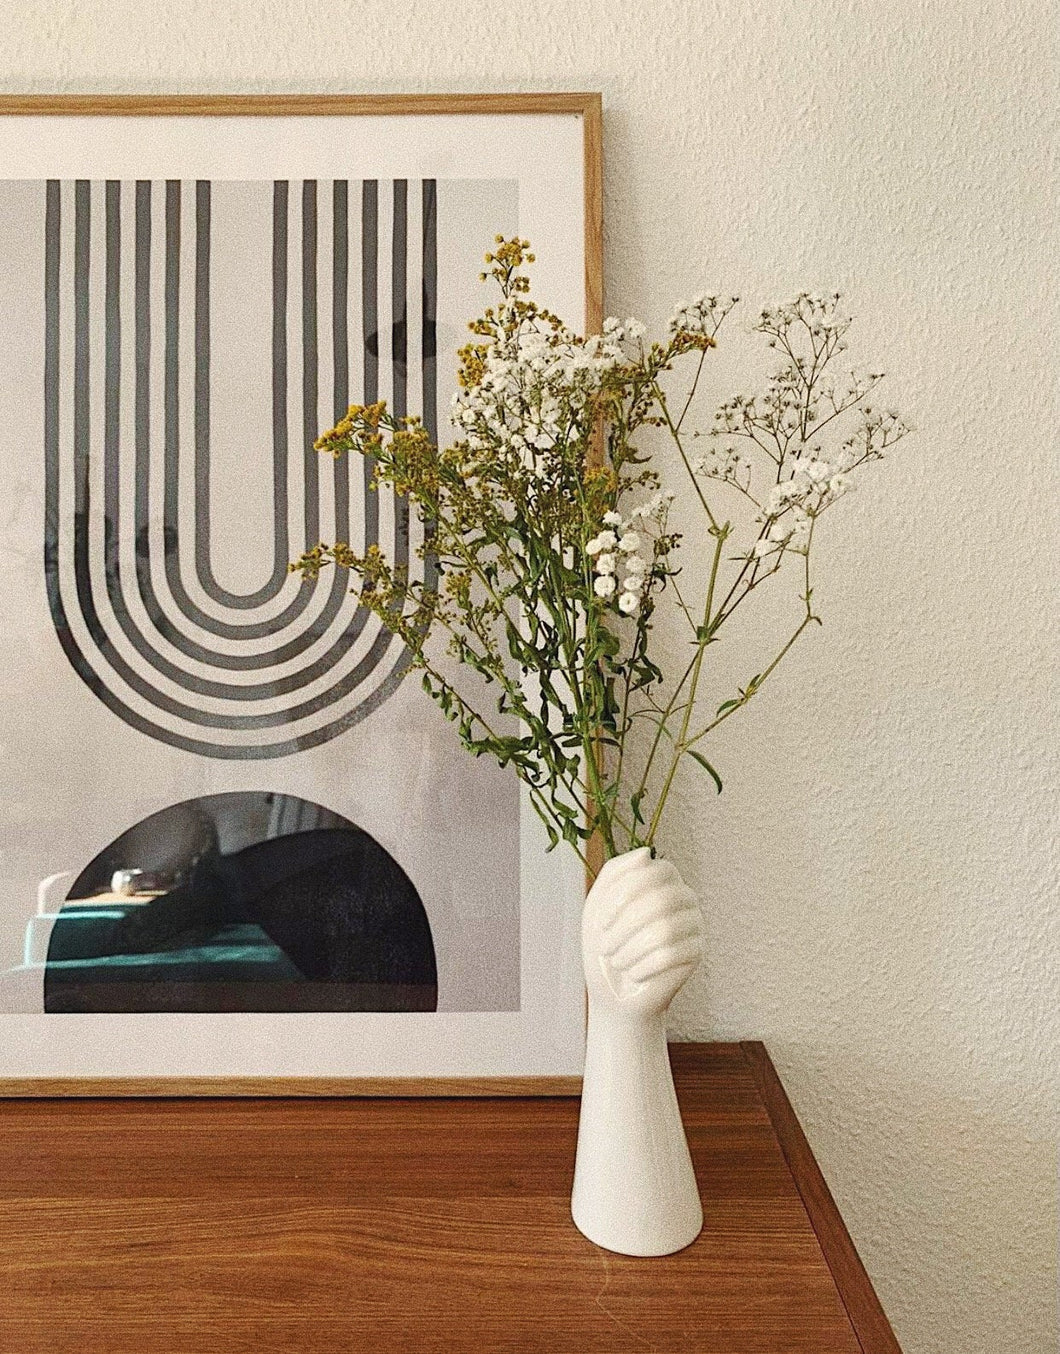 White Ceramic Hand Arm Vase Art Nordic Interior Decor Design